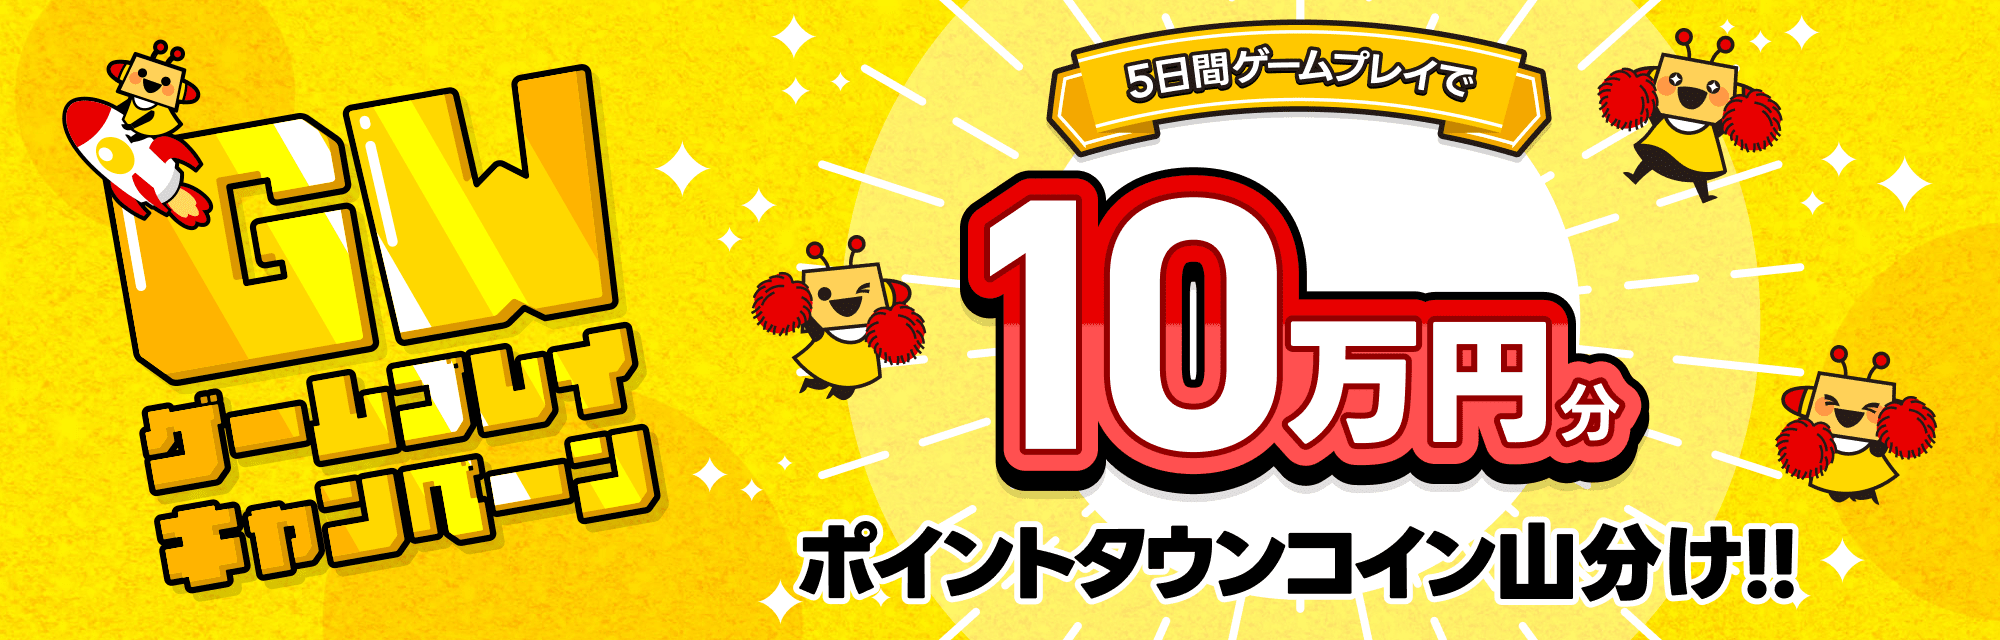 ゴールデンウィークキャンペーン 5日間ゲームプレイで10万円分ポイントタウンコイン山分け!